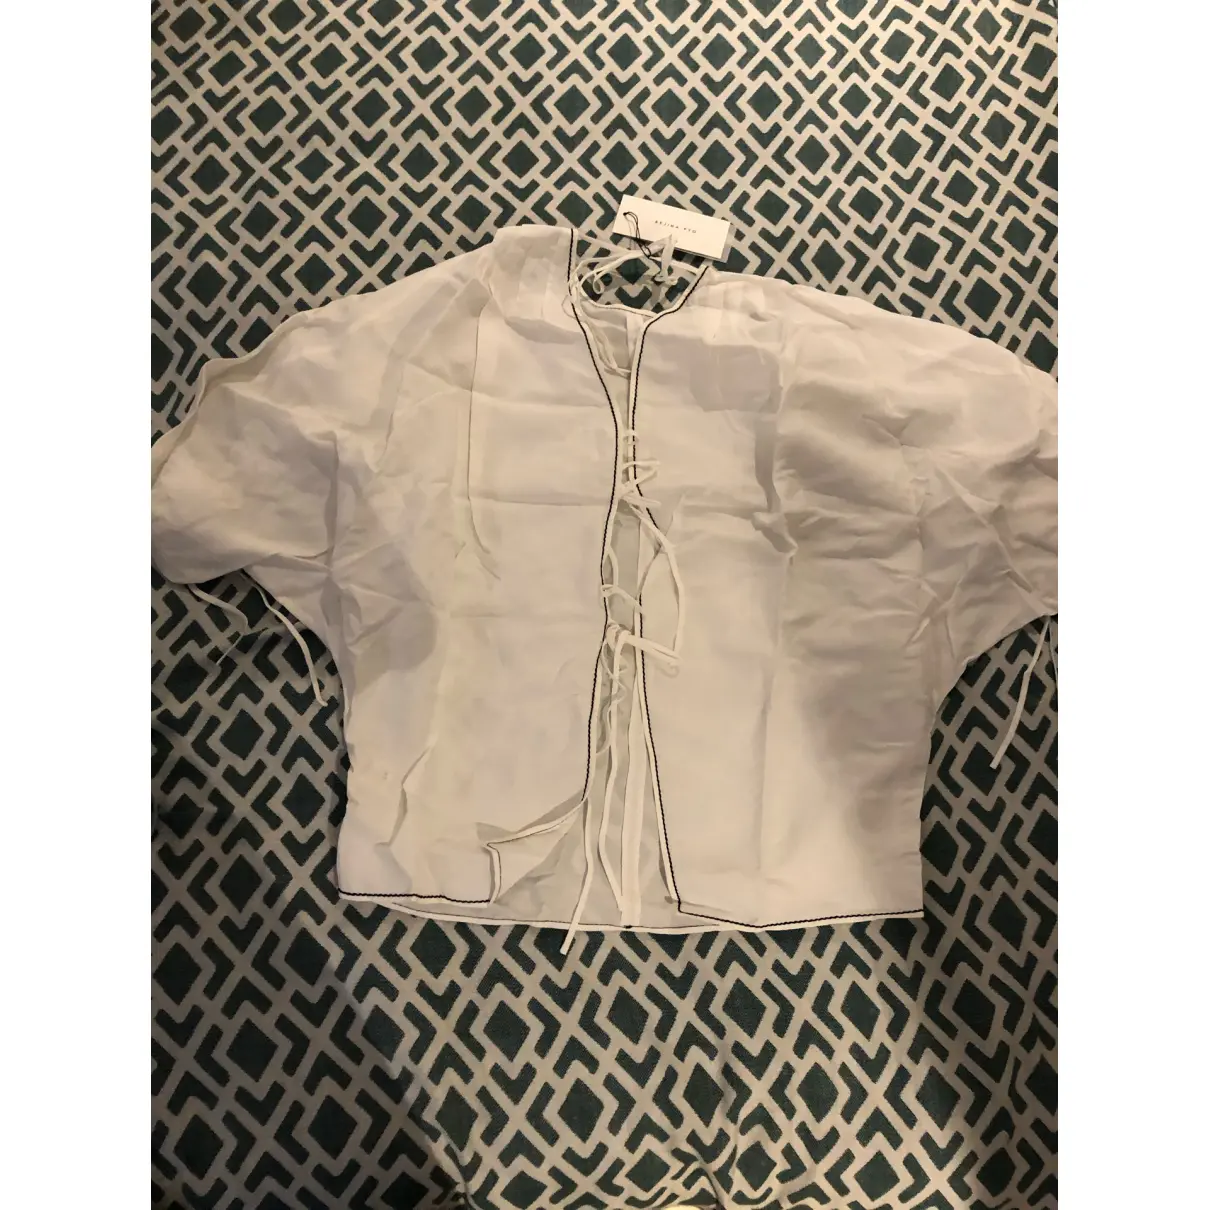 Buy Rejina Pyo Linen blouse online